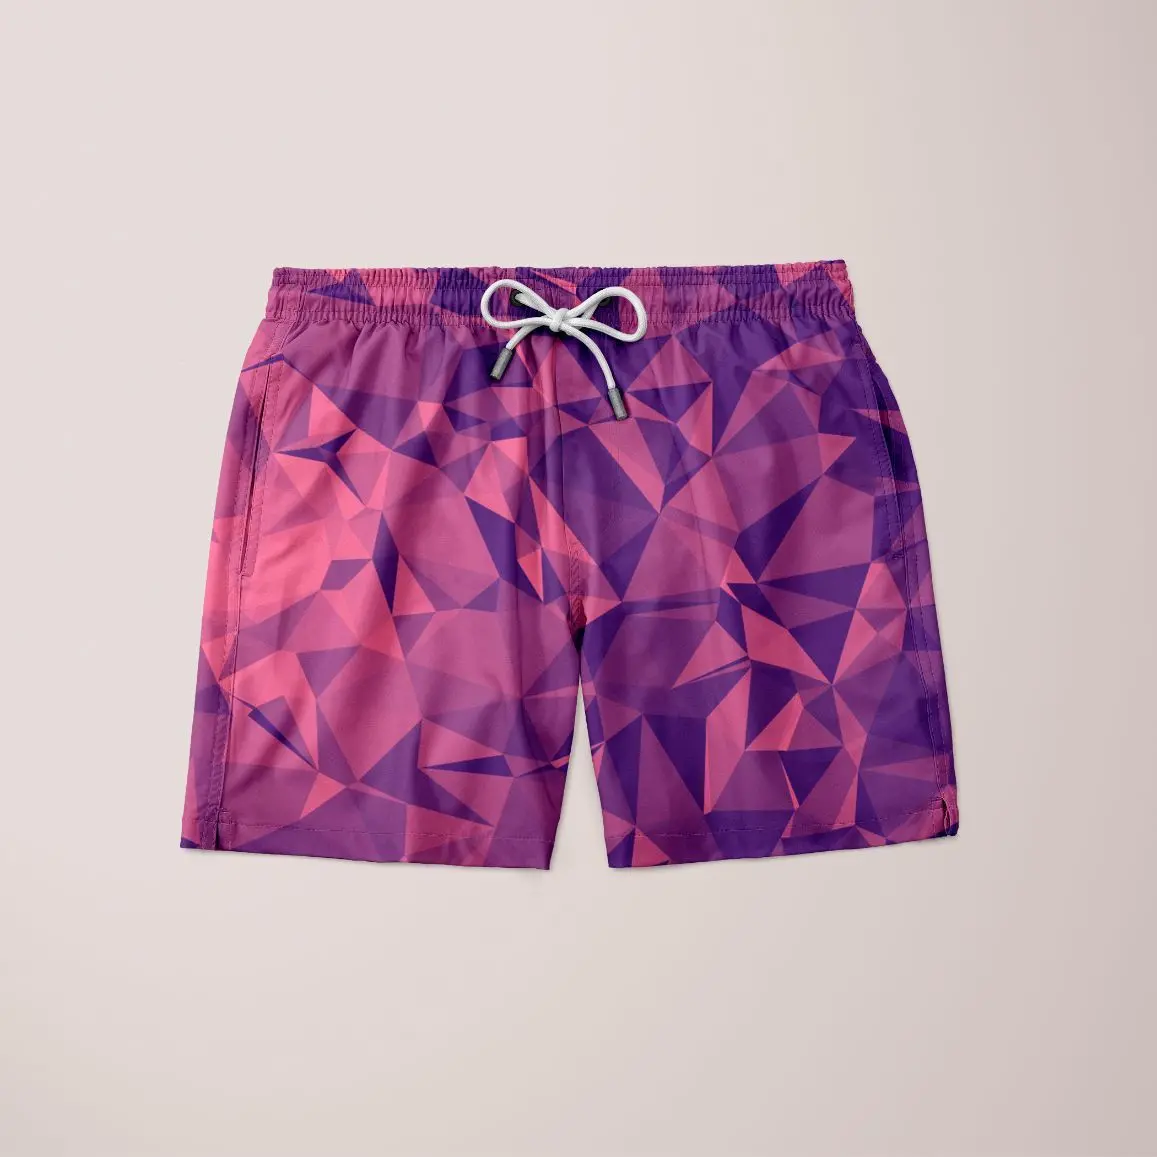 Orinoene Shorts